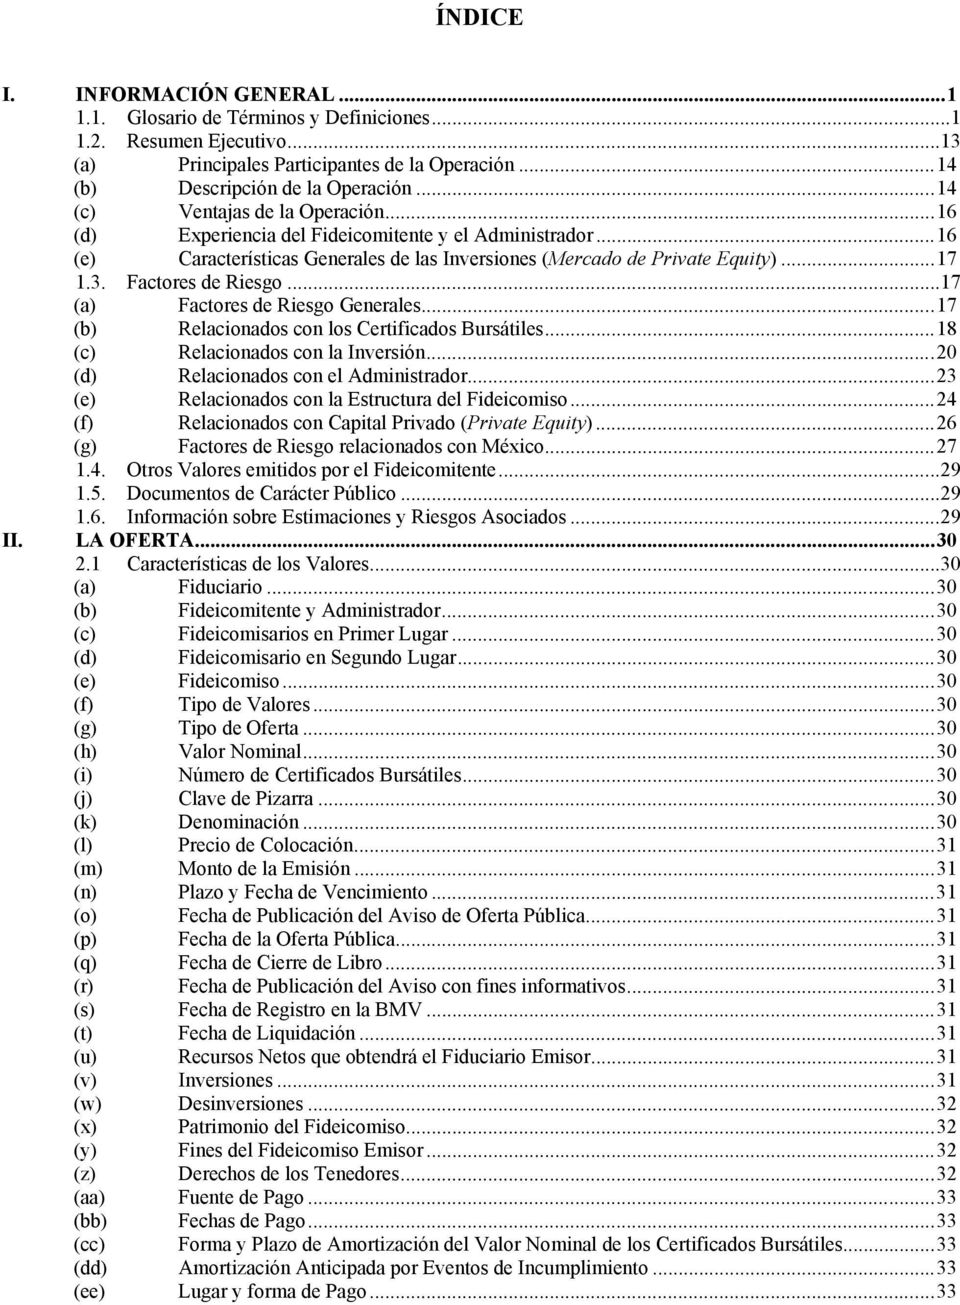 Factores de Riesgo...17 (a) Factores de Riesgo Generales...17 (b) Relacionados con los Certificados Bursátiles...18 (c) Relacionados con la Inversión...20 (d) Relacionados con el Administrador.